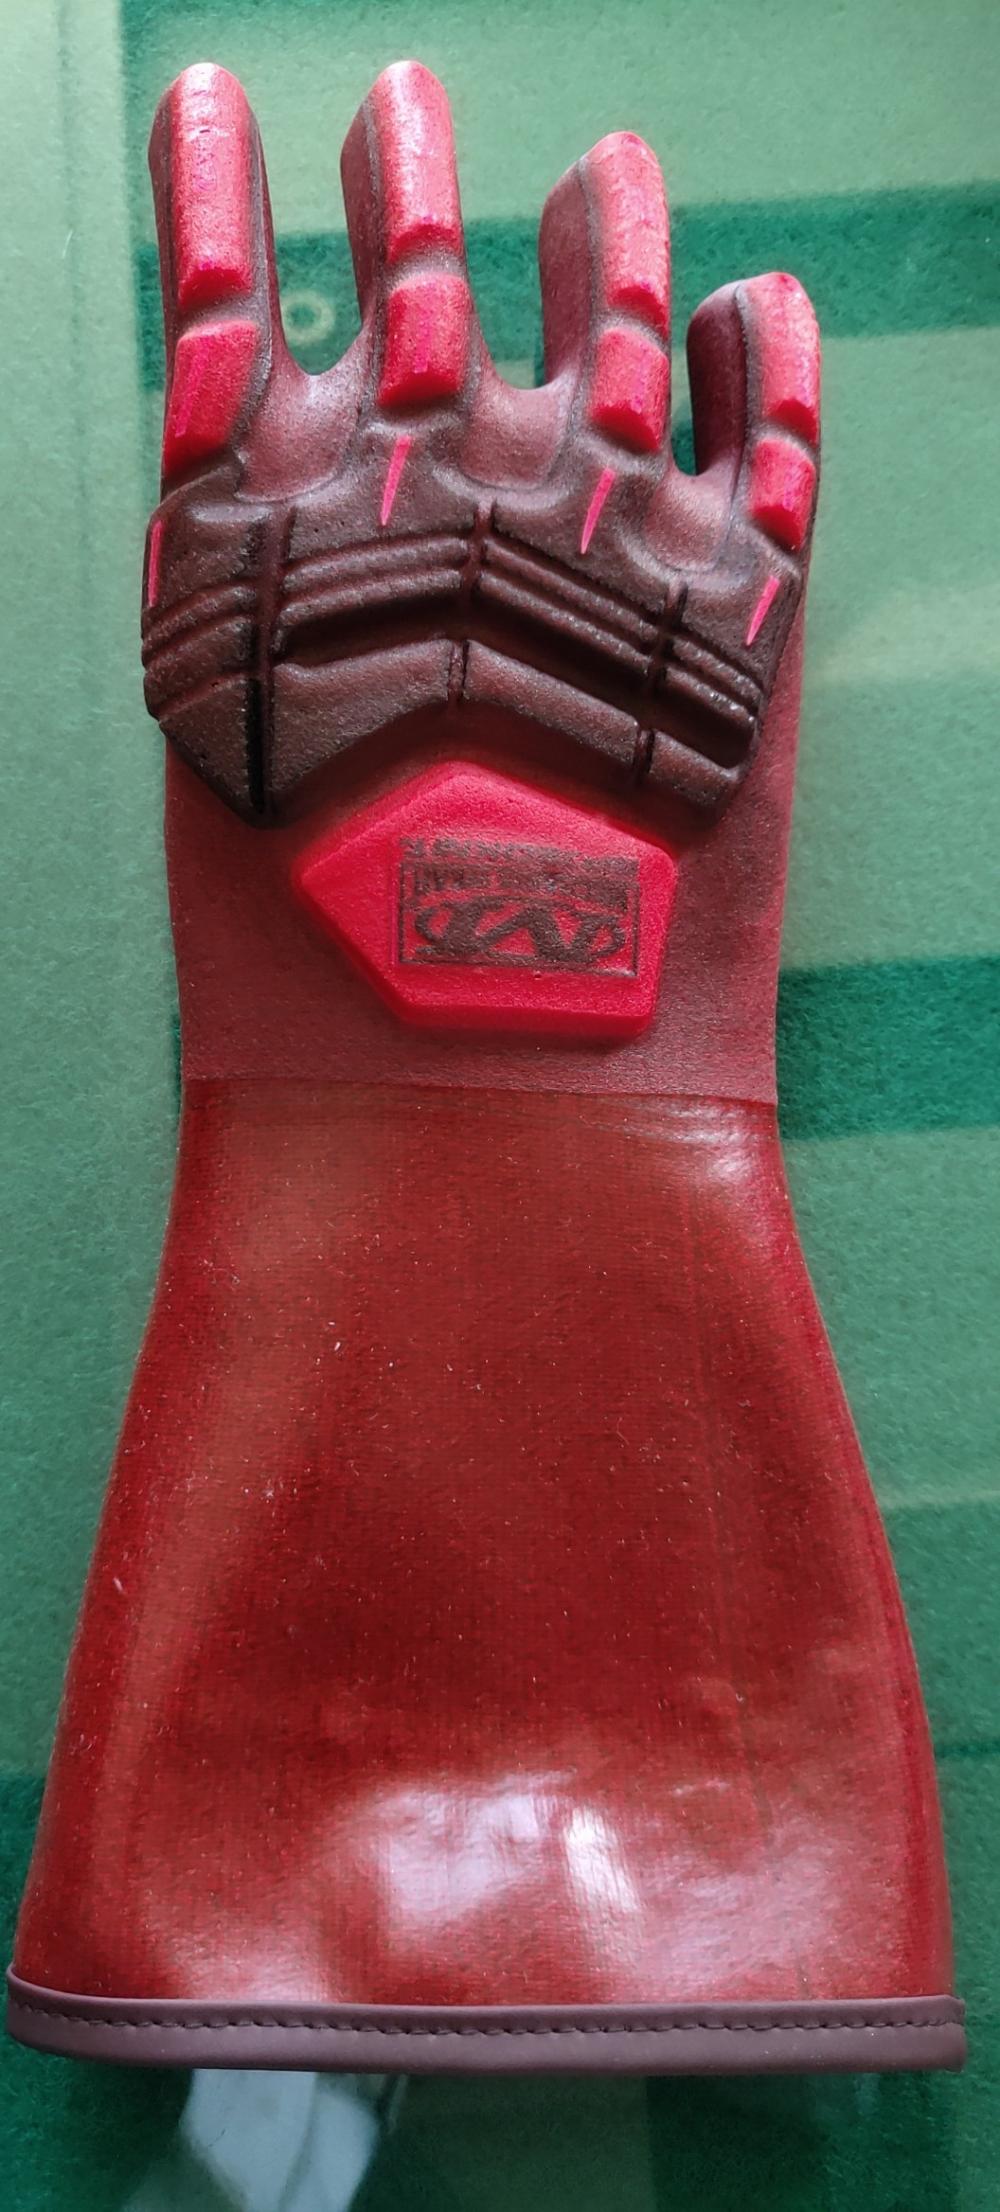 الأحمر البلاستيكية المغلفة قفاز TPR مع كامل الخلف من حارس تأثير اليد